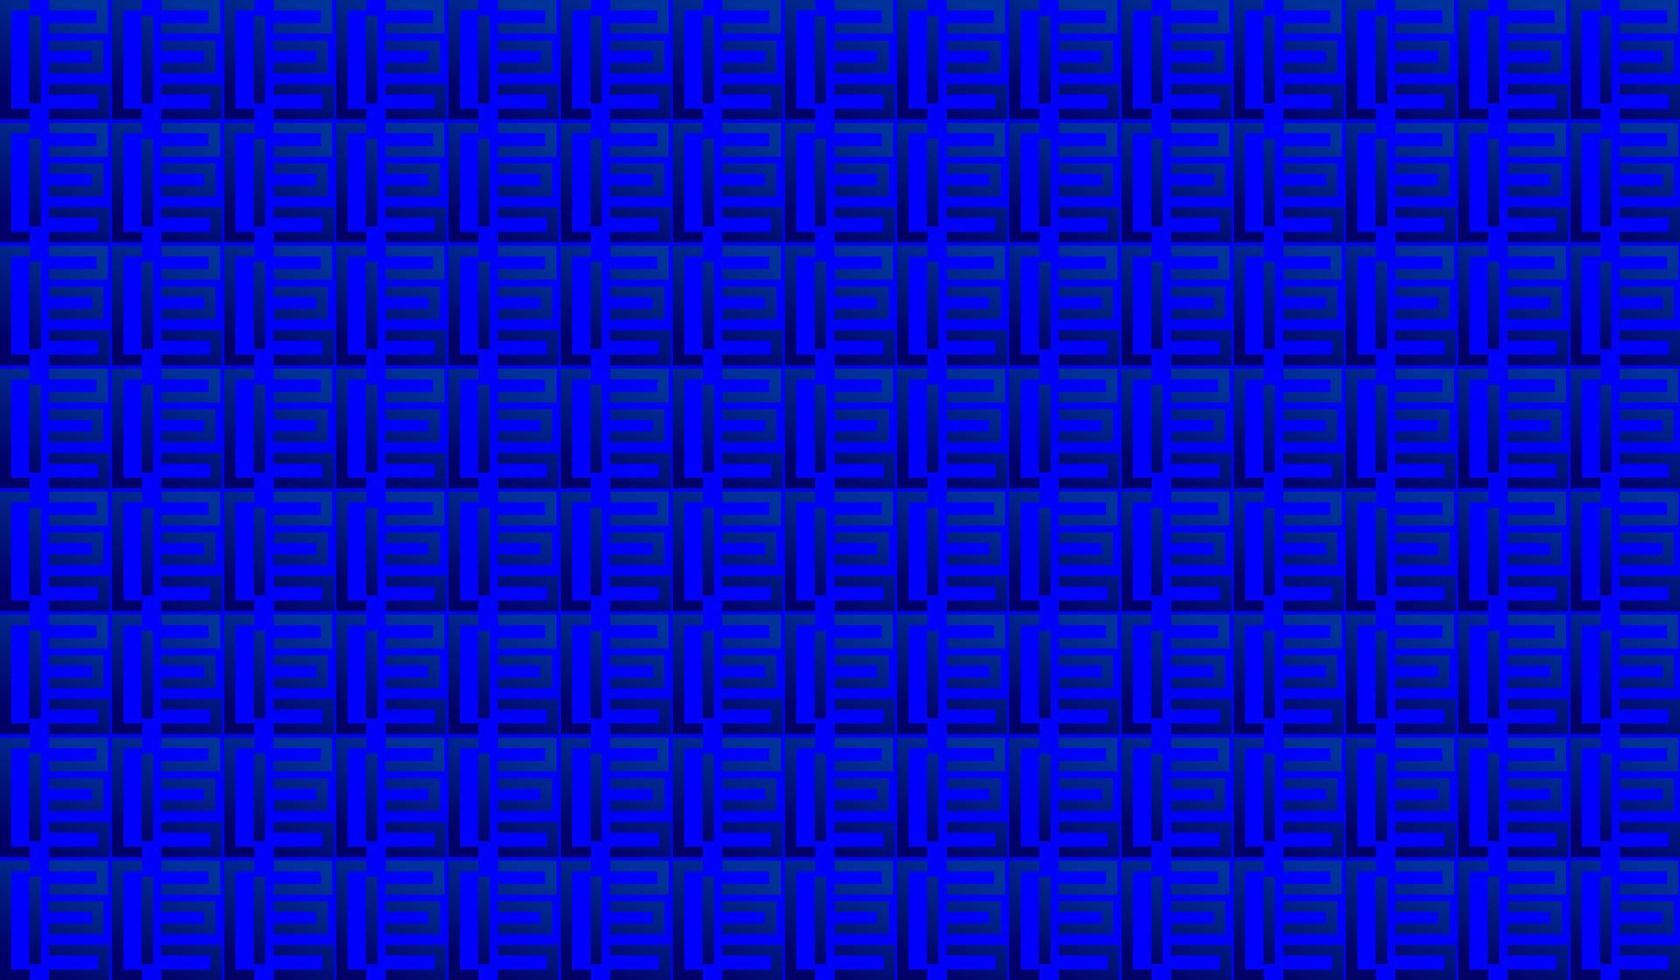 Blauer Hintergrund. illustration mit buchstabeninitialen e aufgereiht und ordentlich angeordnet. Texturen zur Ergänzung Ihrer Geschäfts- oder Designanforderungen vektor